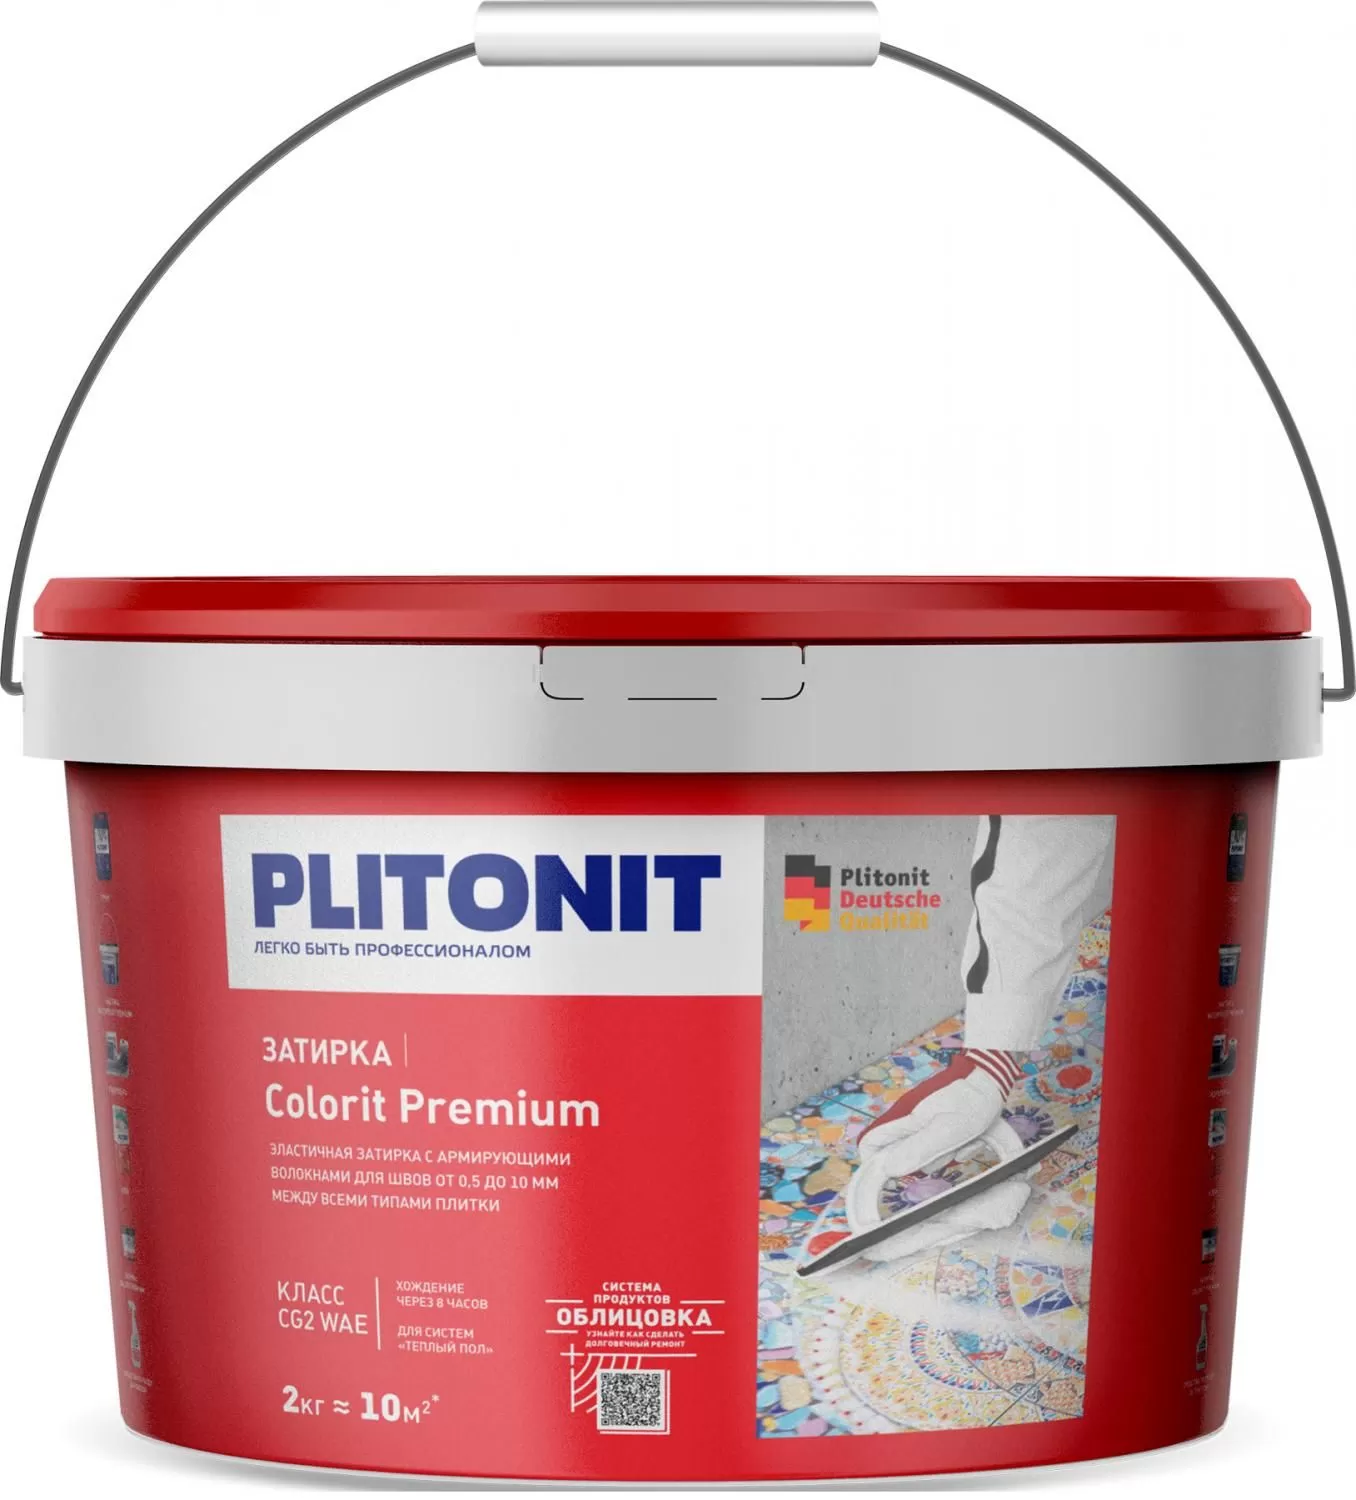 Купить Затирка Plitonit Colorit Premium светло-коричневая 2 кг цементная